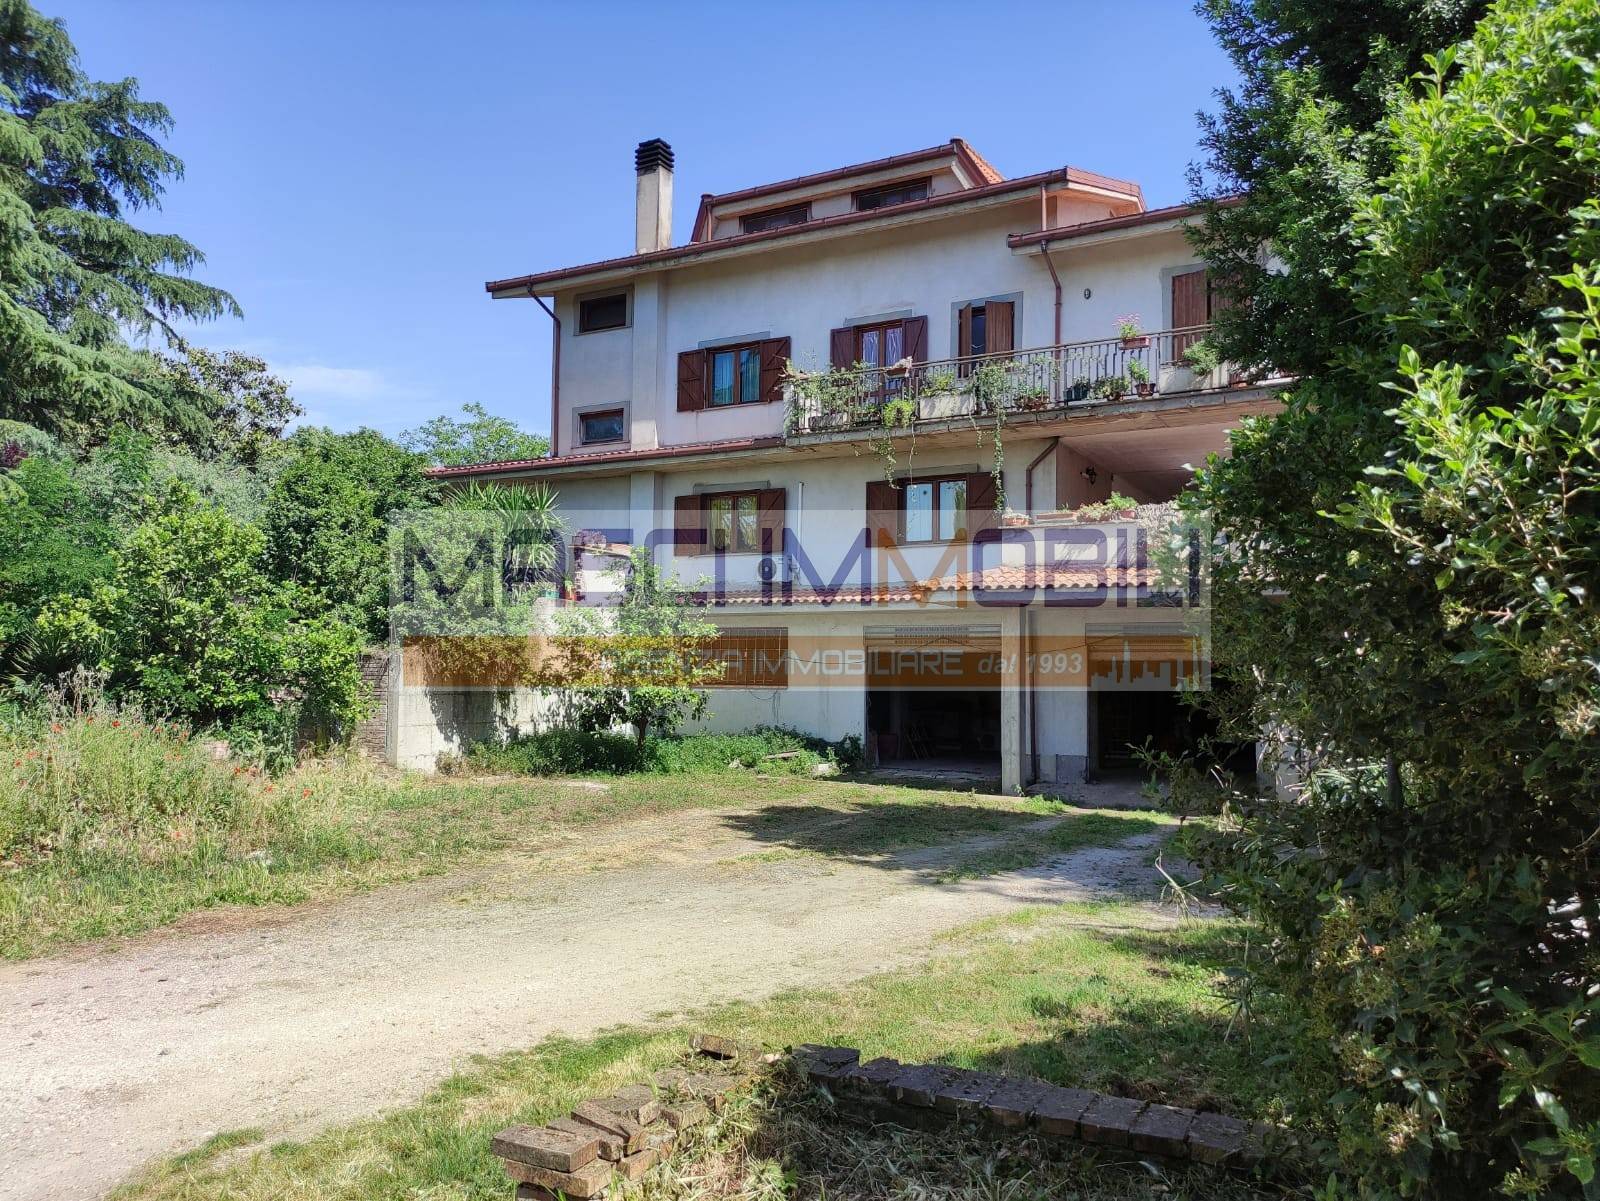 Villa in vendita a Monterotondo, 7 locali, zona Località: SAN MARTINELLO, prezzo € 420.000 | CambioCasa.it